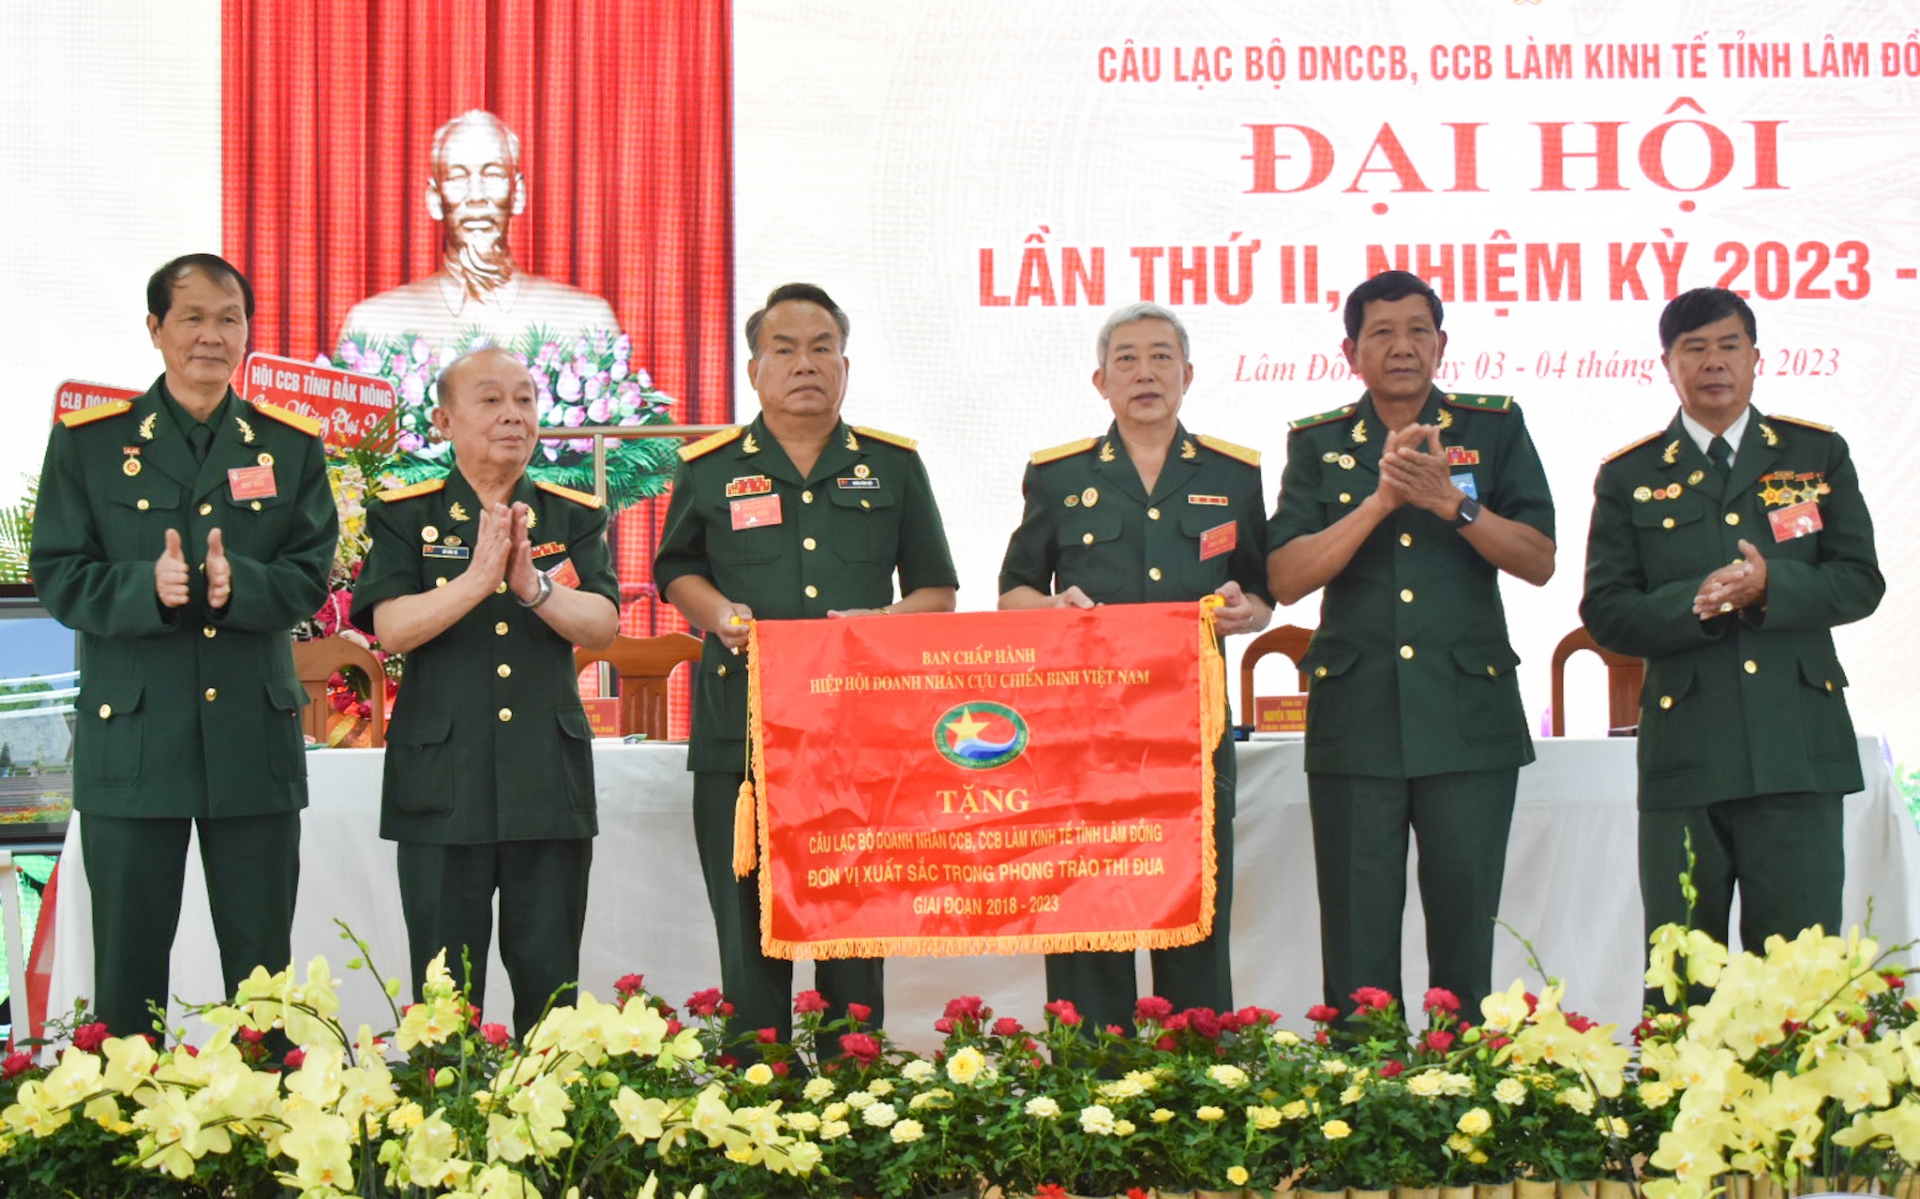 Phát huy vai trò của CLB Doanh nhân CCB, CCB làm kinh tế tỉnh Lâm Đồng